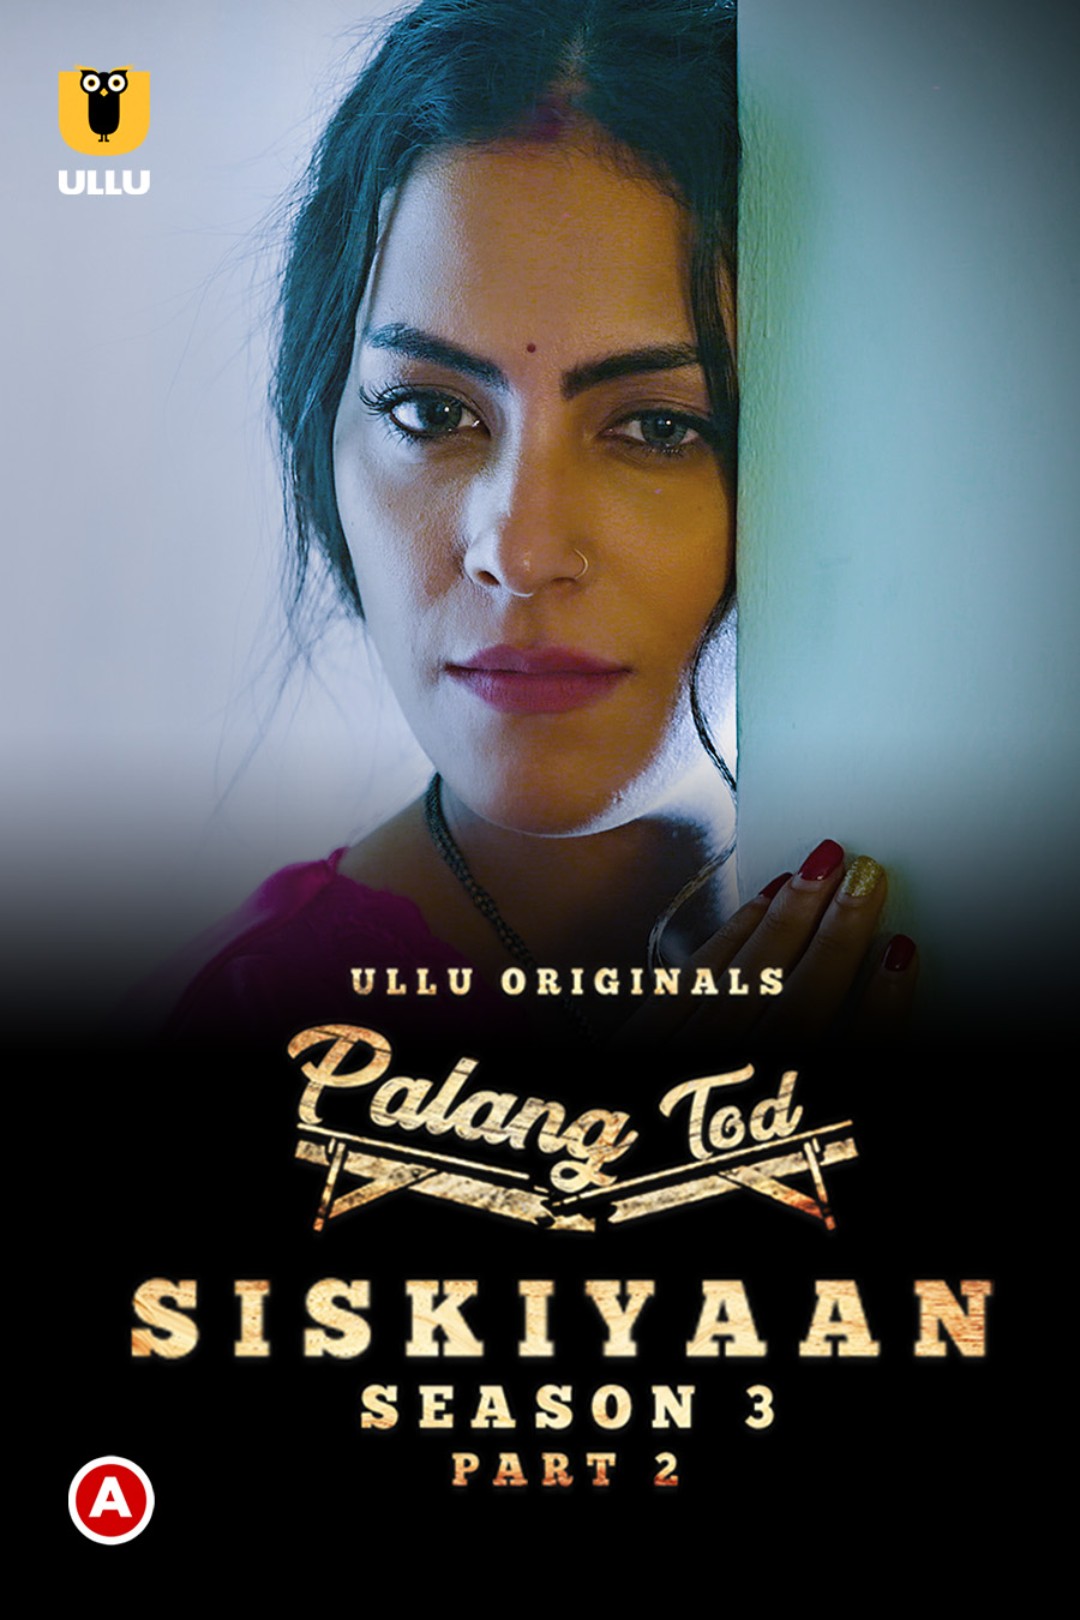 Download Palang Tod (Siskiyaan Season 3) Part 2 (2022) WEB DL Hindi ULLU 1080p [1.0GB] | 720p [500MB] | 480p [240MB] download